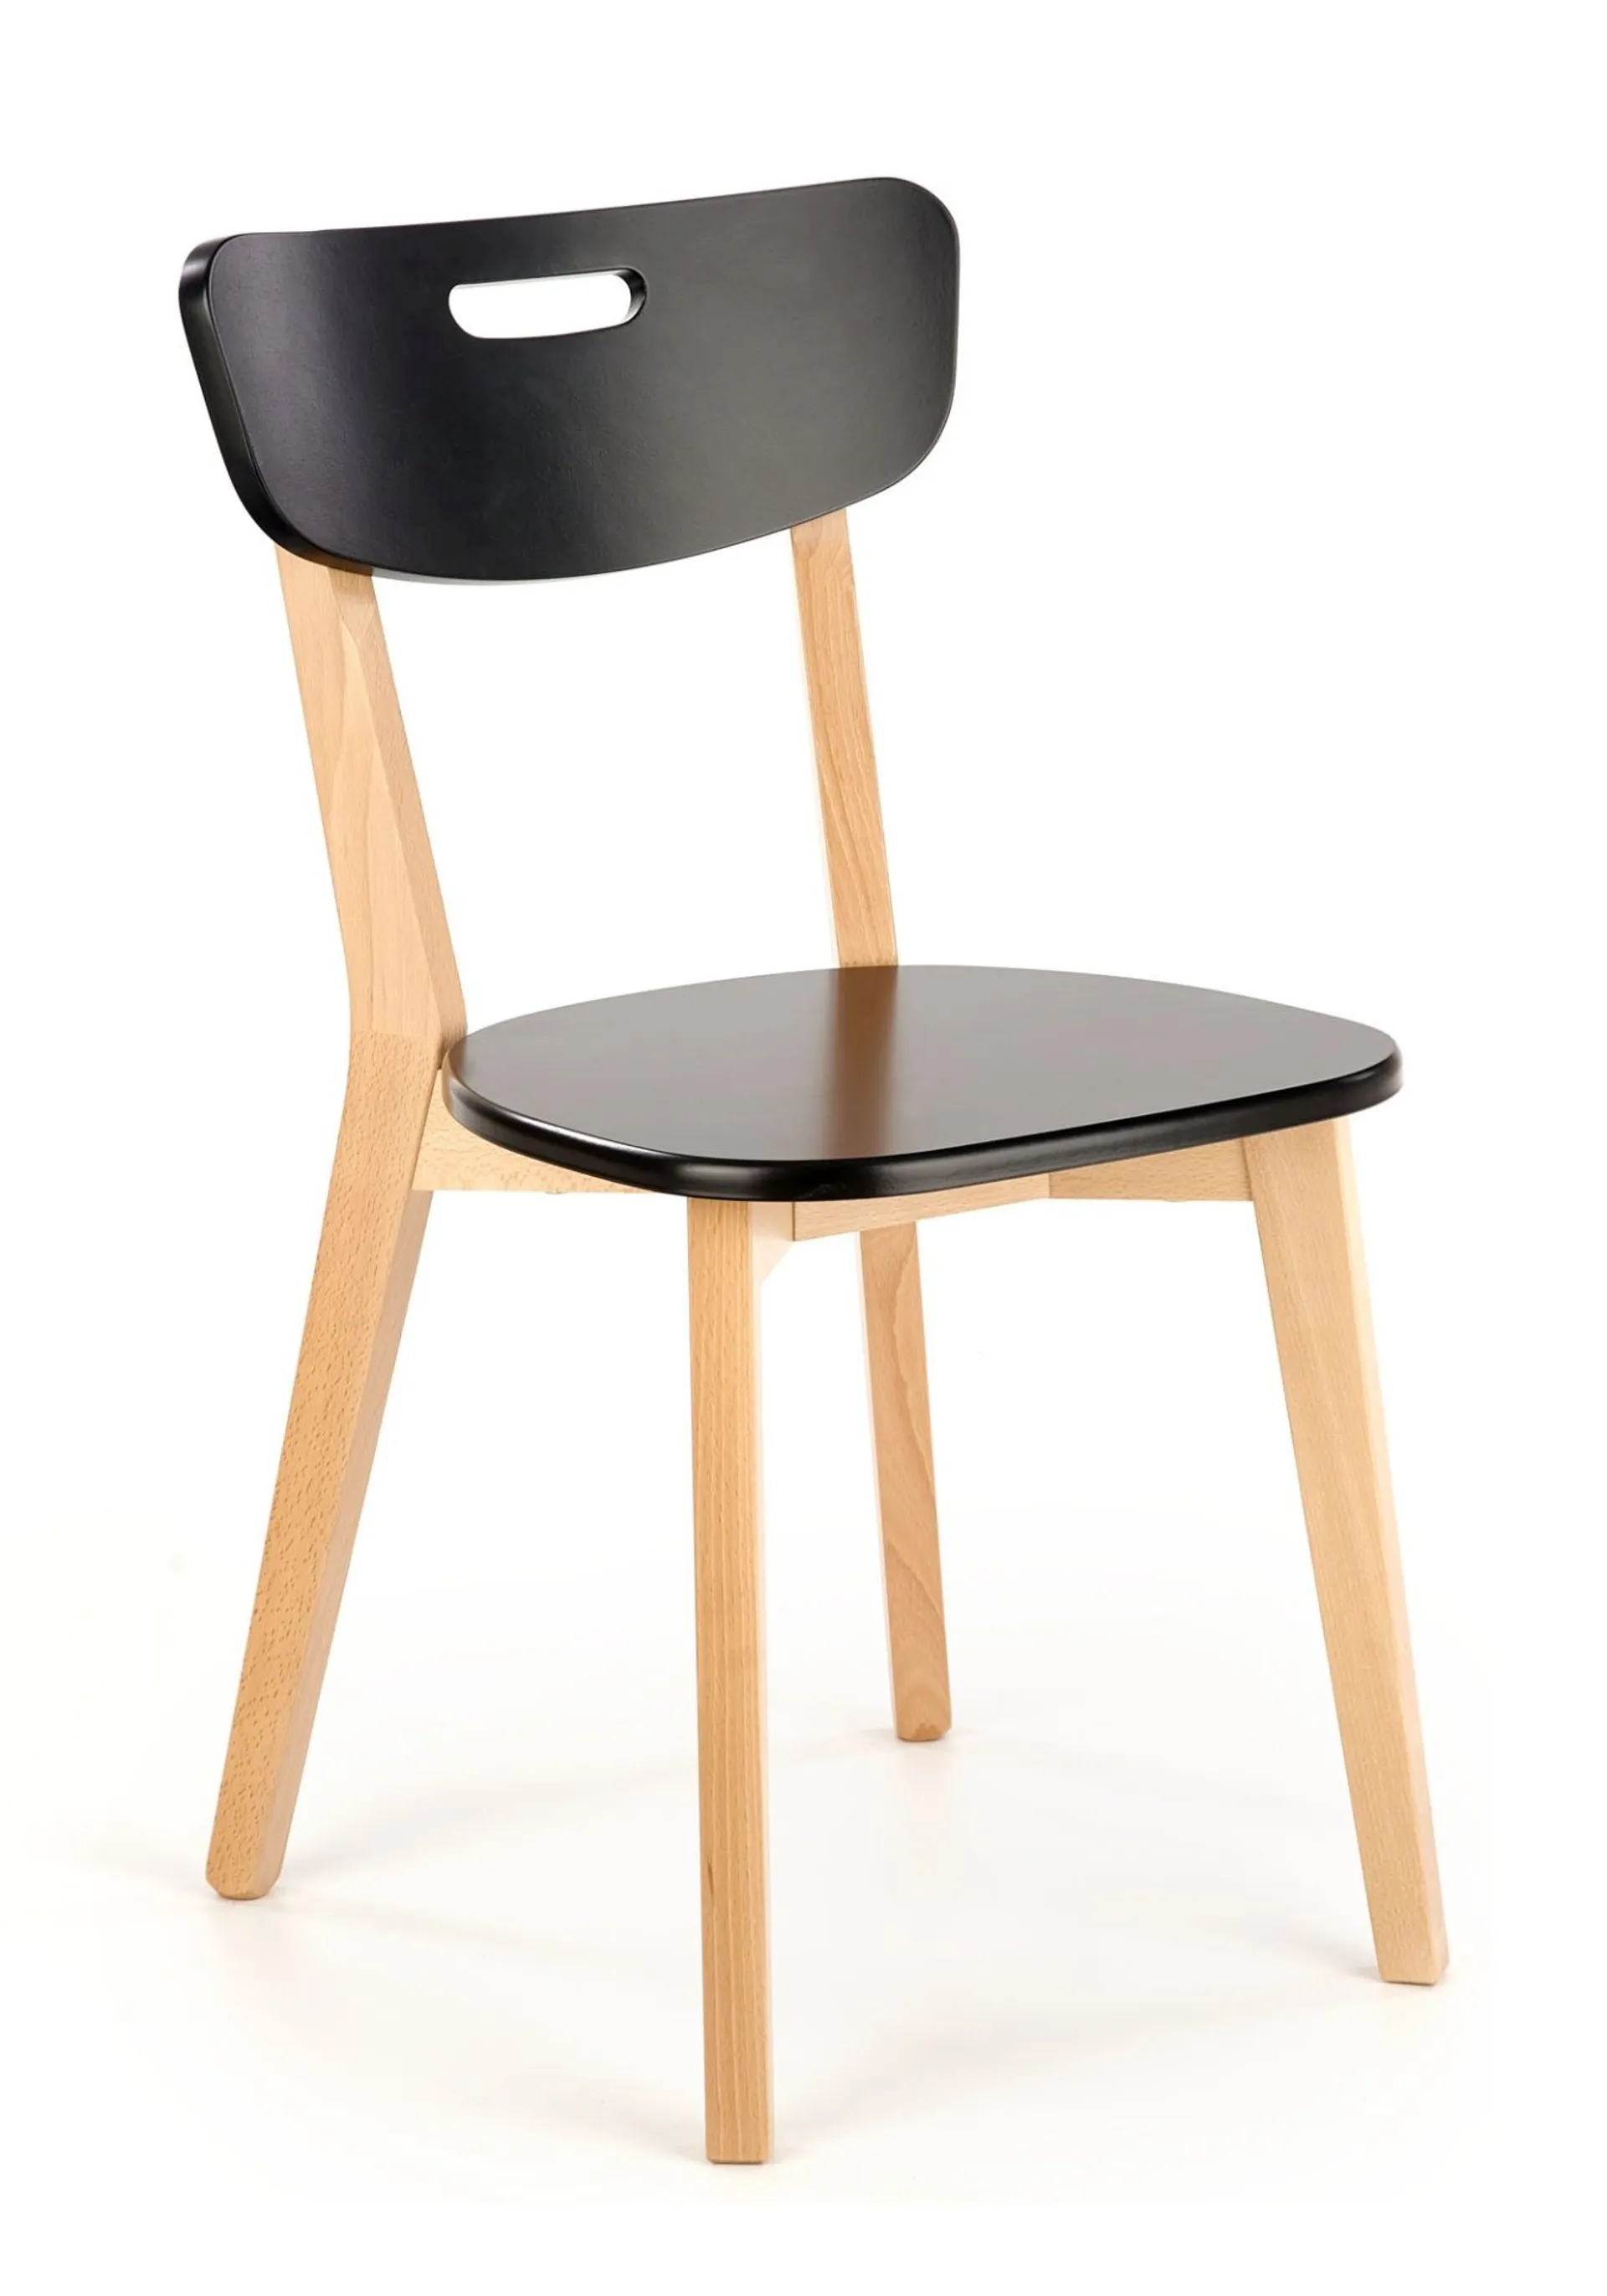 Krzesło Niko 1 201 Buk / 134 Czarne